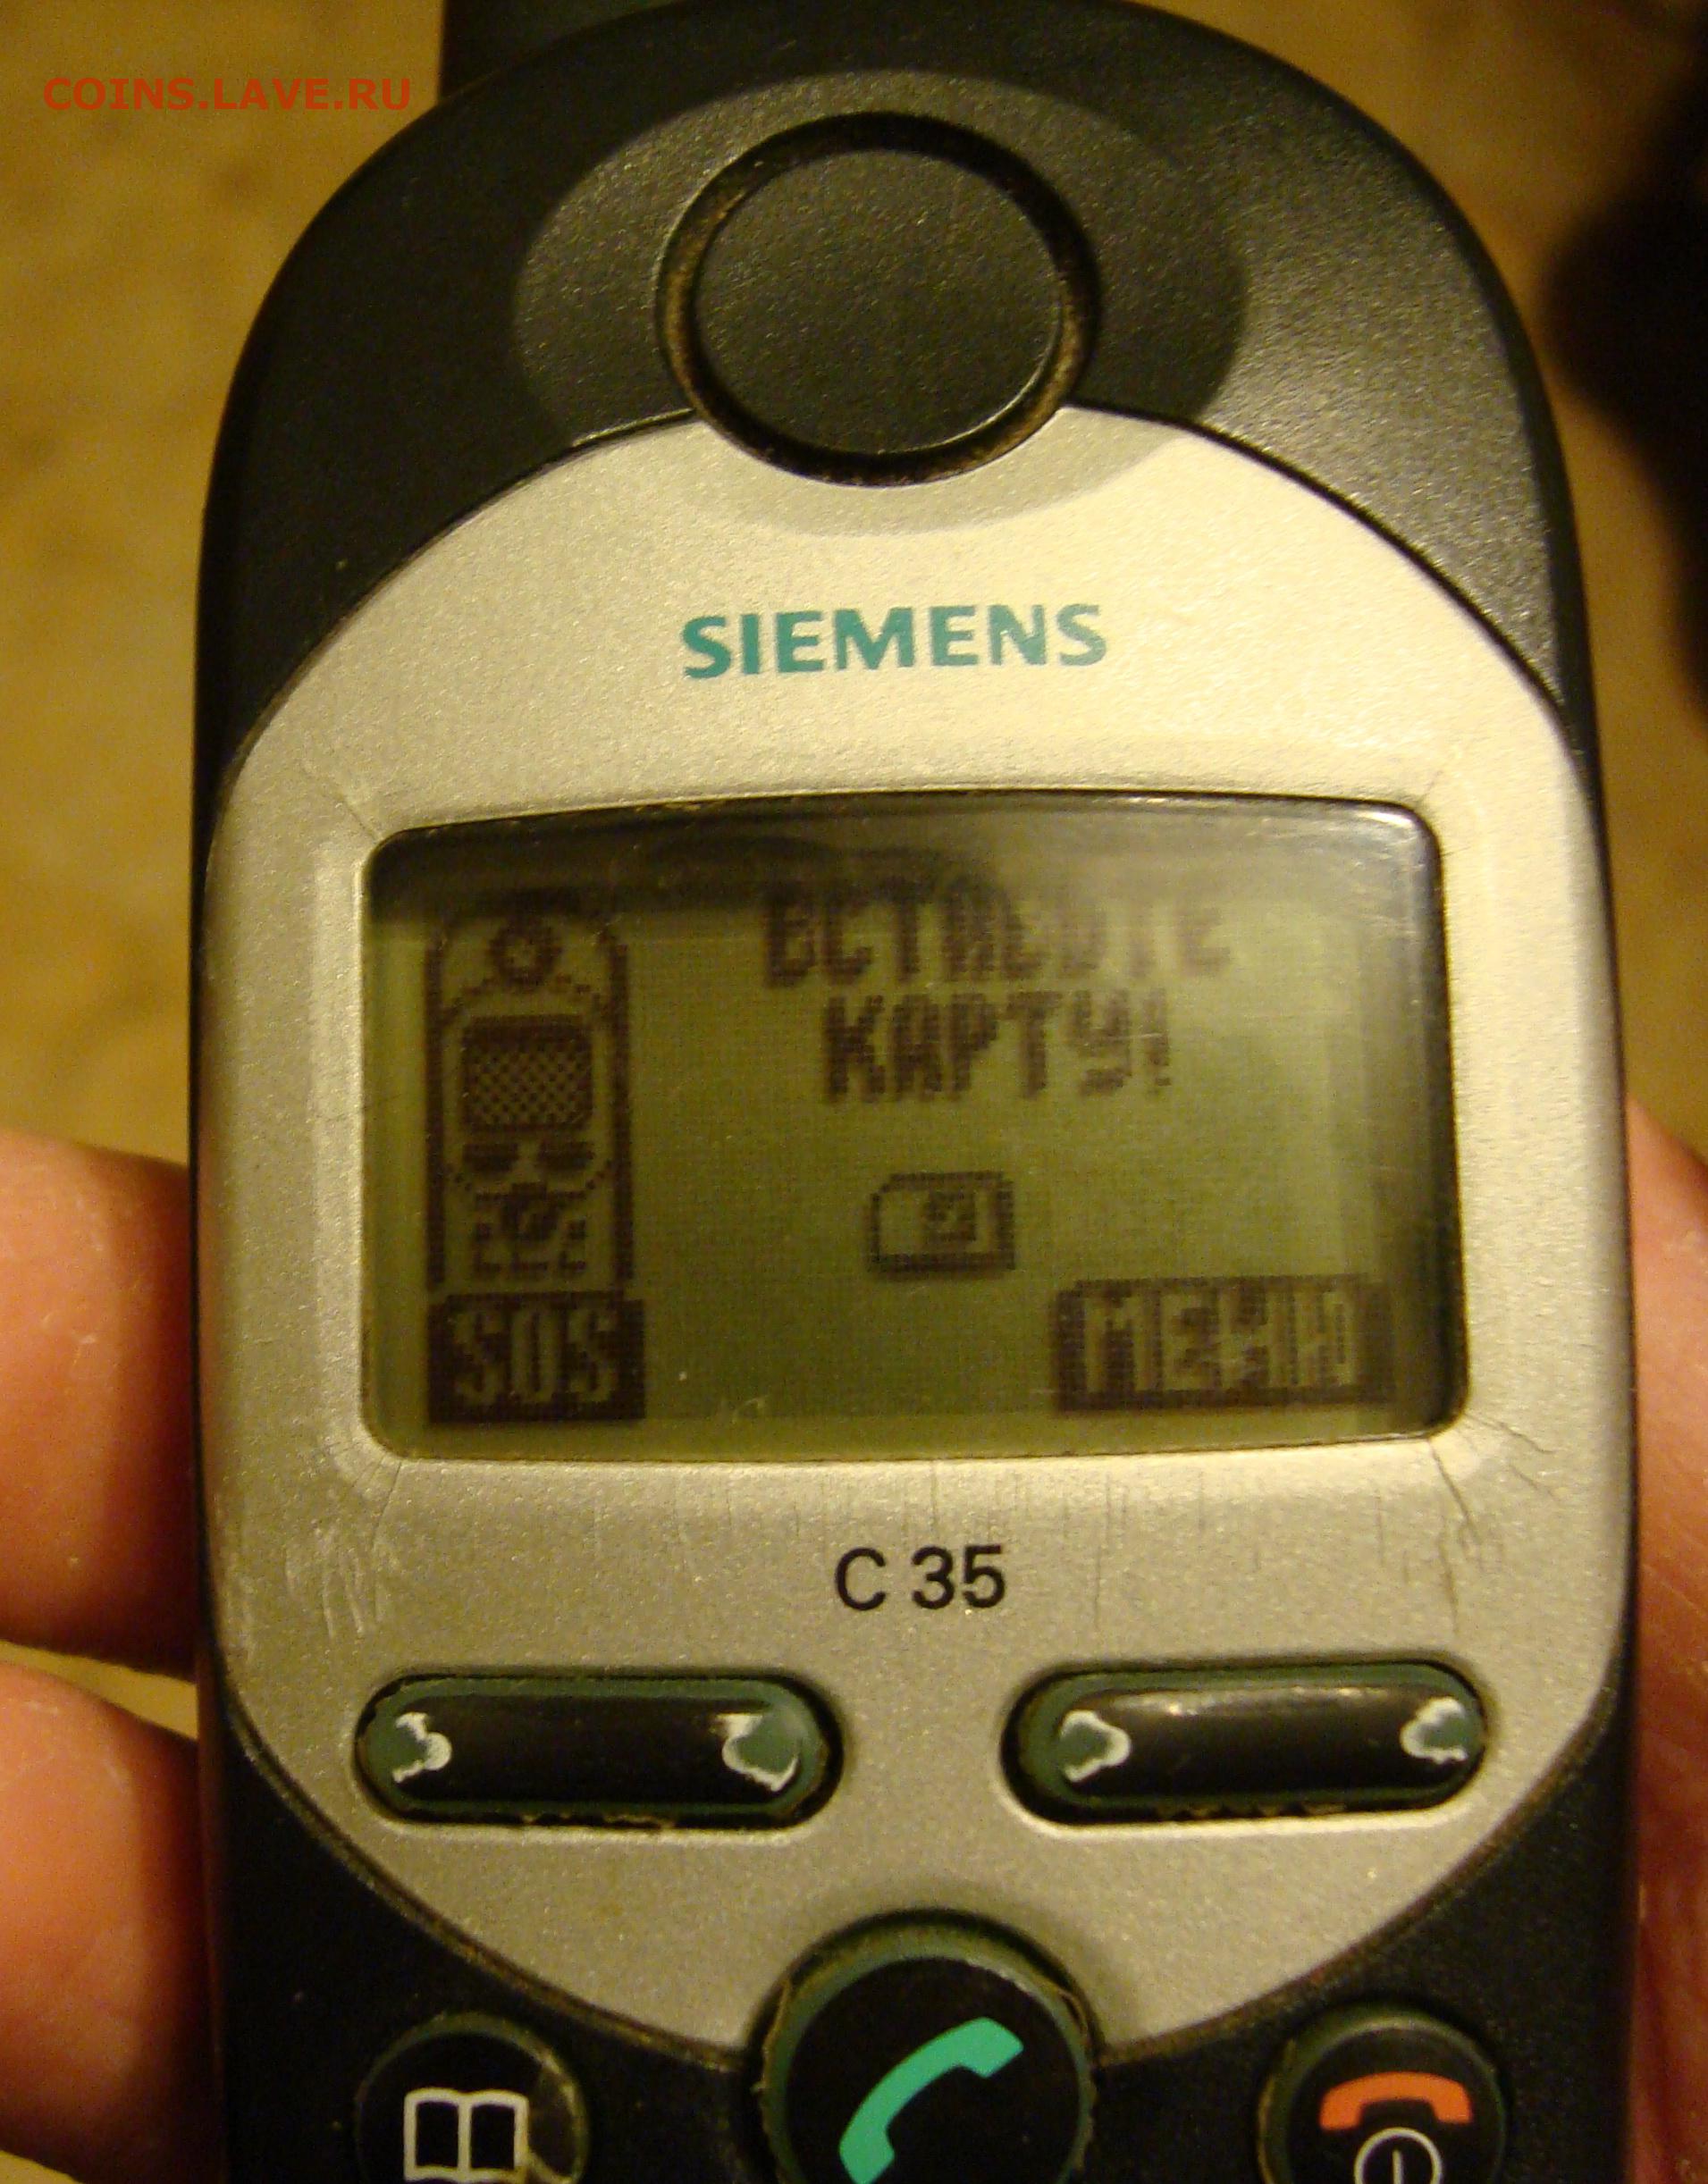 Сименс немецкой сборки. Сименс а35. Мобильник Сименс с35. Сотовые телефоны Siemens a35. Мобильный Сименс с35 антенна.